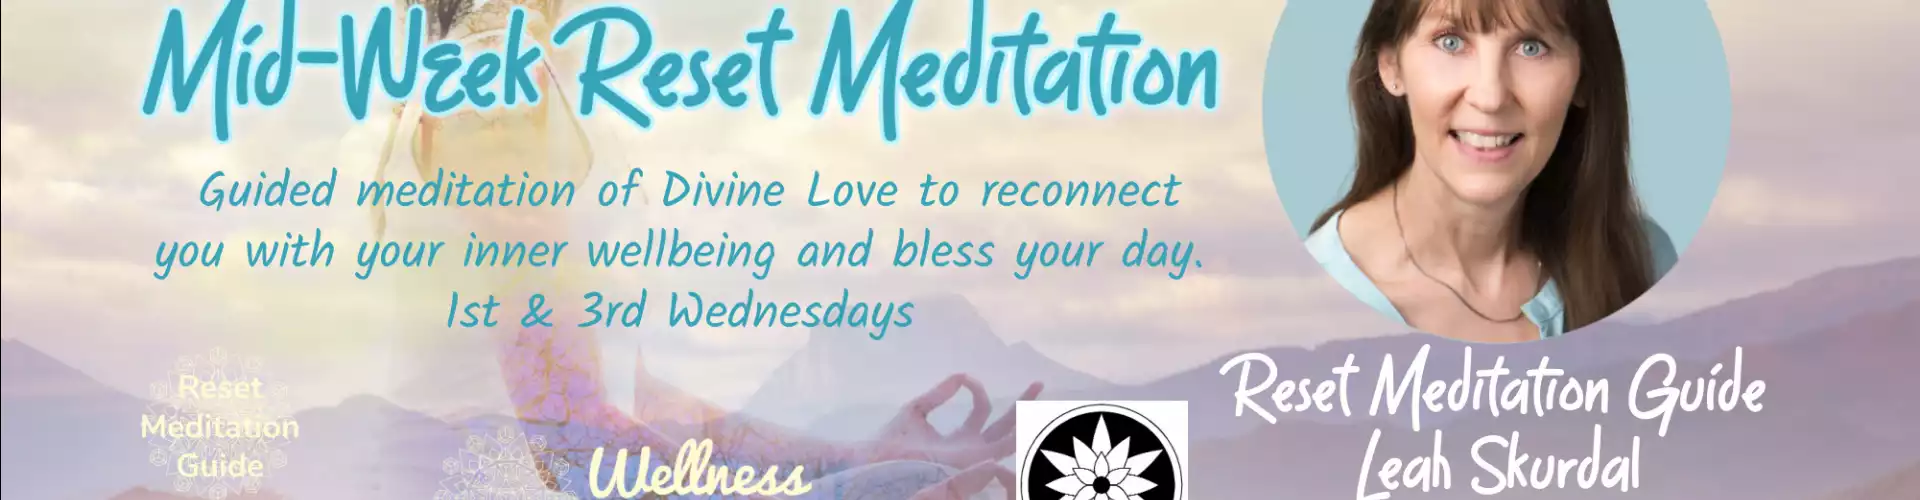 Mid Week Reset Meditation with WU Guide Leah Skurdal